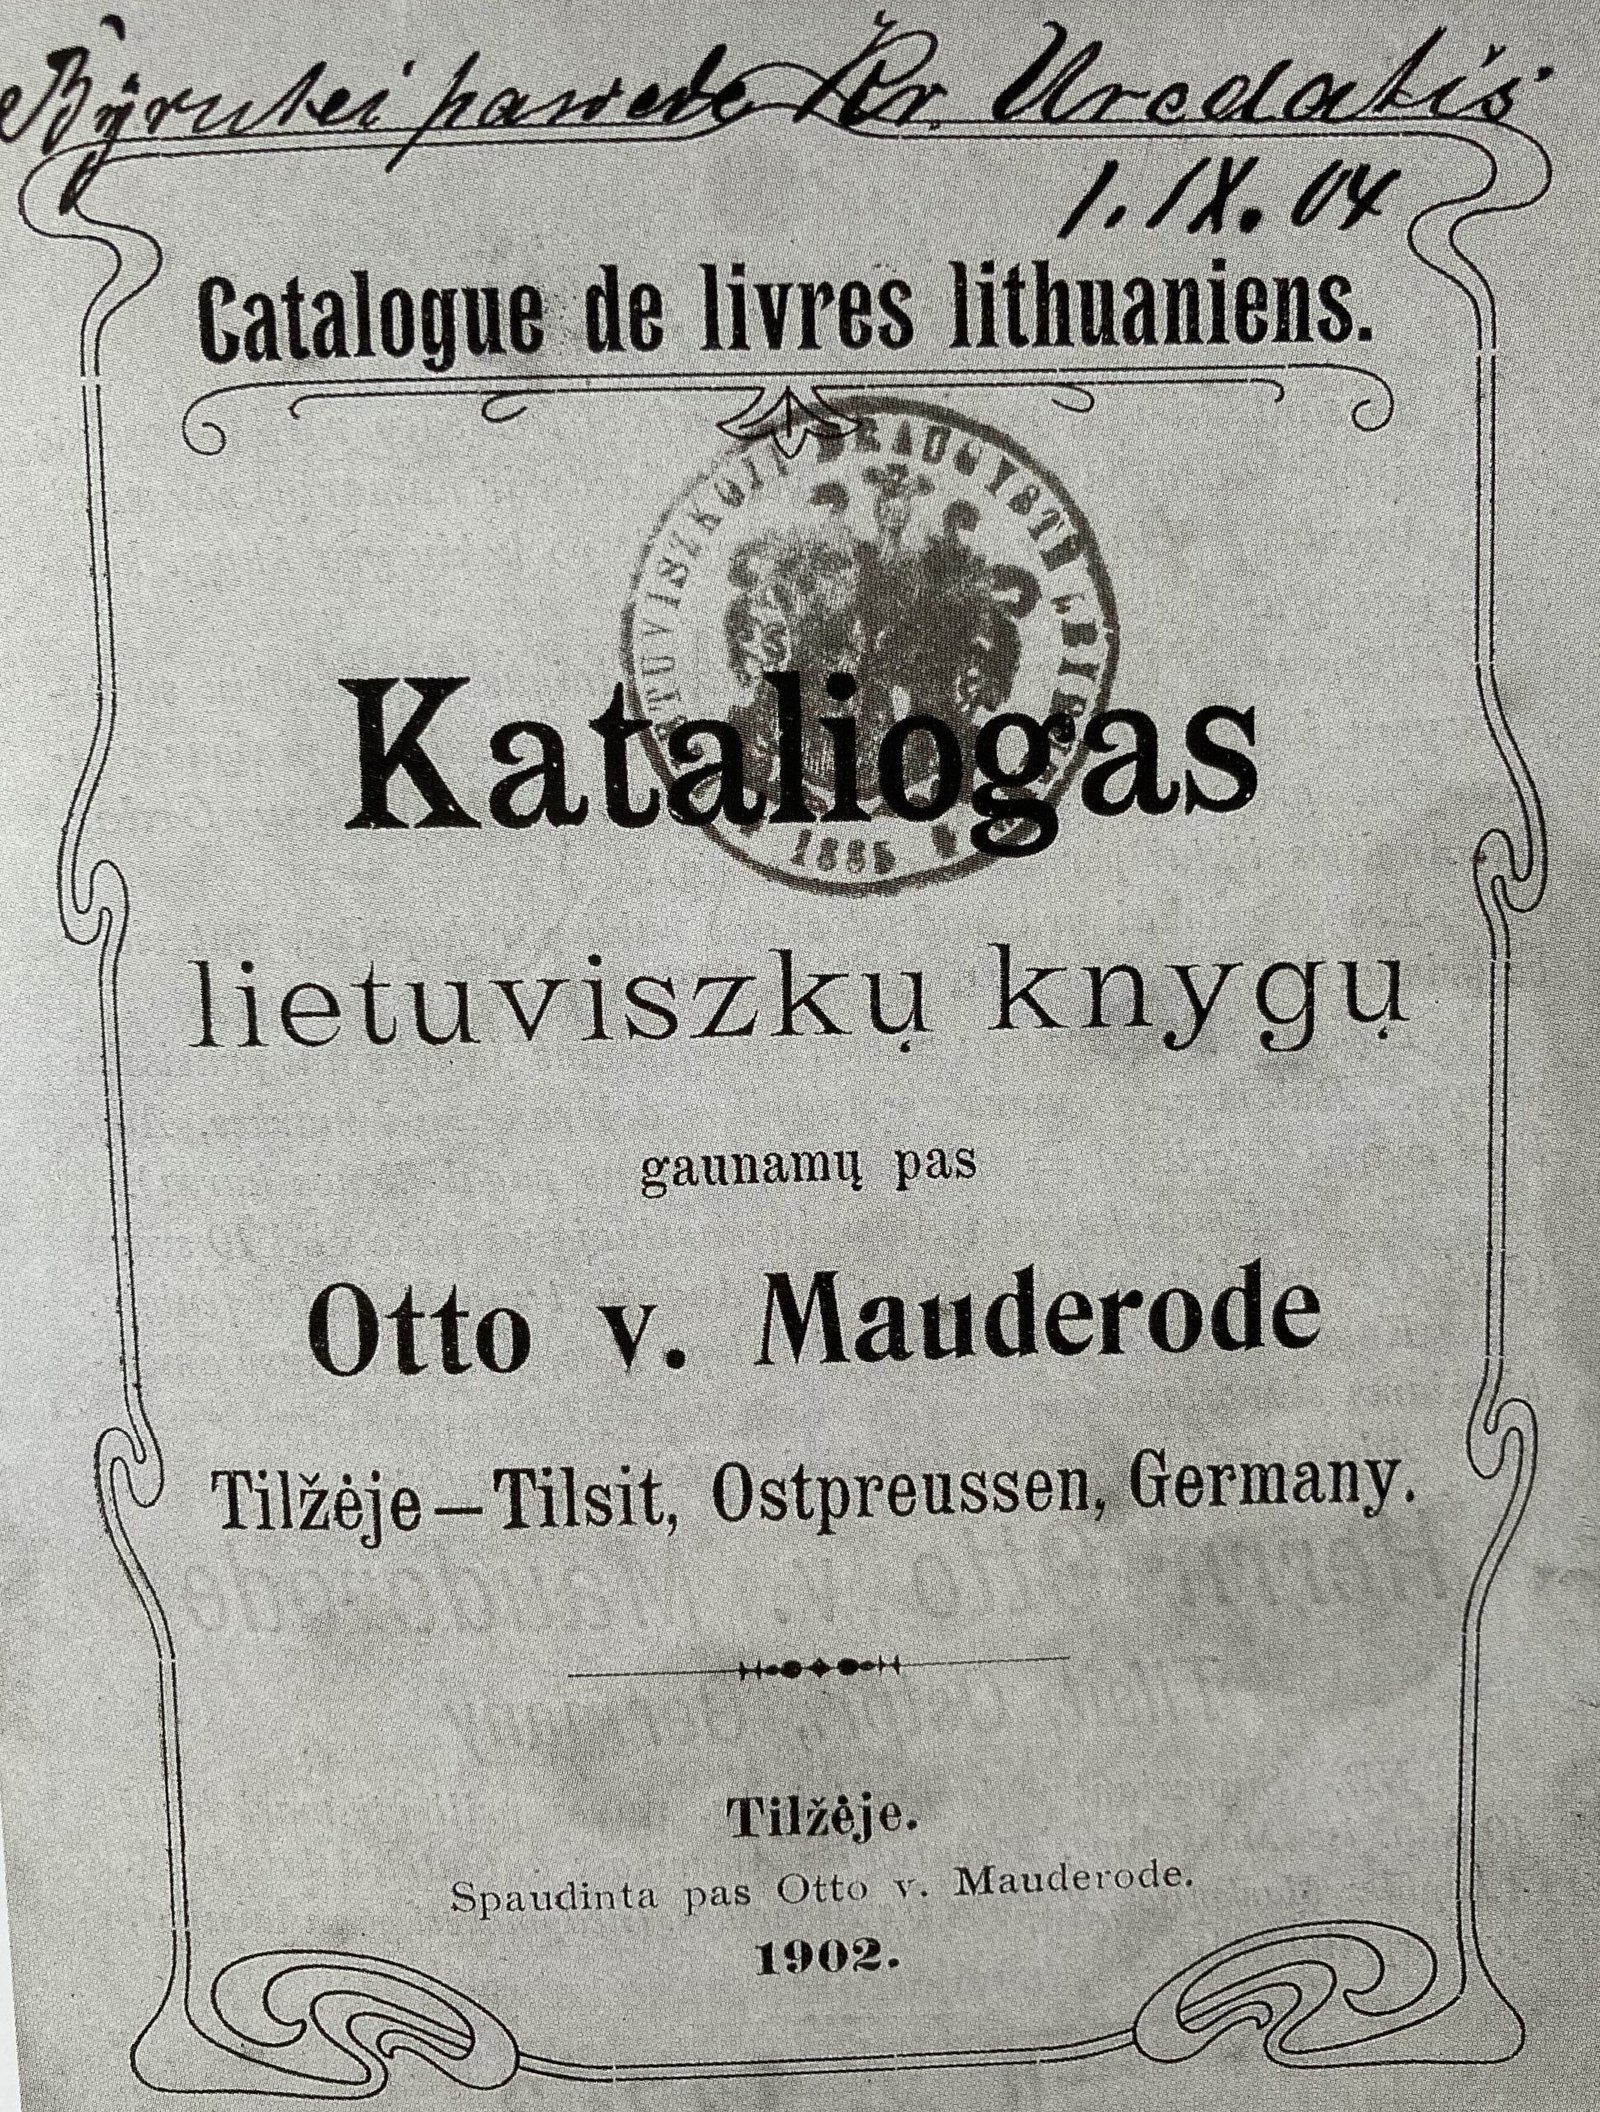 O.von Mauderodės spaustuvėje Tilžėje spaudos draudimo metais buvo išspausdinta apie 800 lietuviškų knygų, iš jų apie 220 kontrafakcijų. Šios spaustuvės lietuviškų knygų 1902 m. katalogas. Lietuvos nacionalinės Martyno Mažvydo bibliotekos archyvas